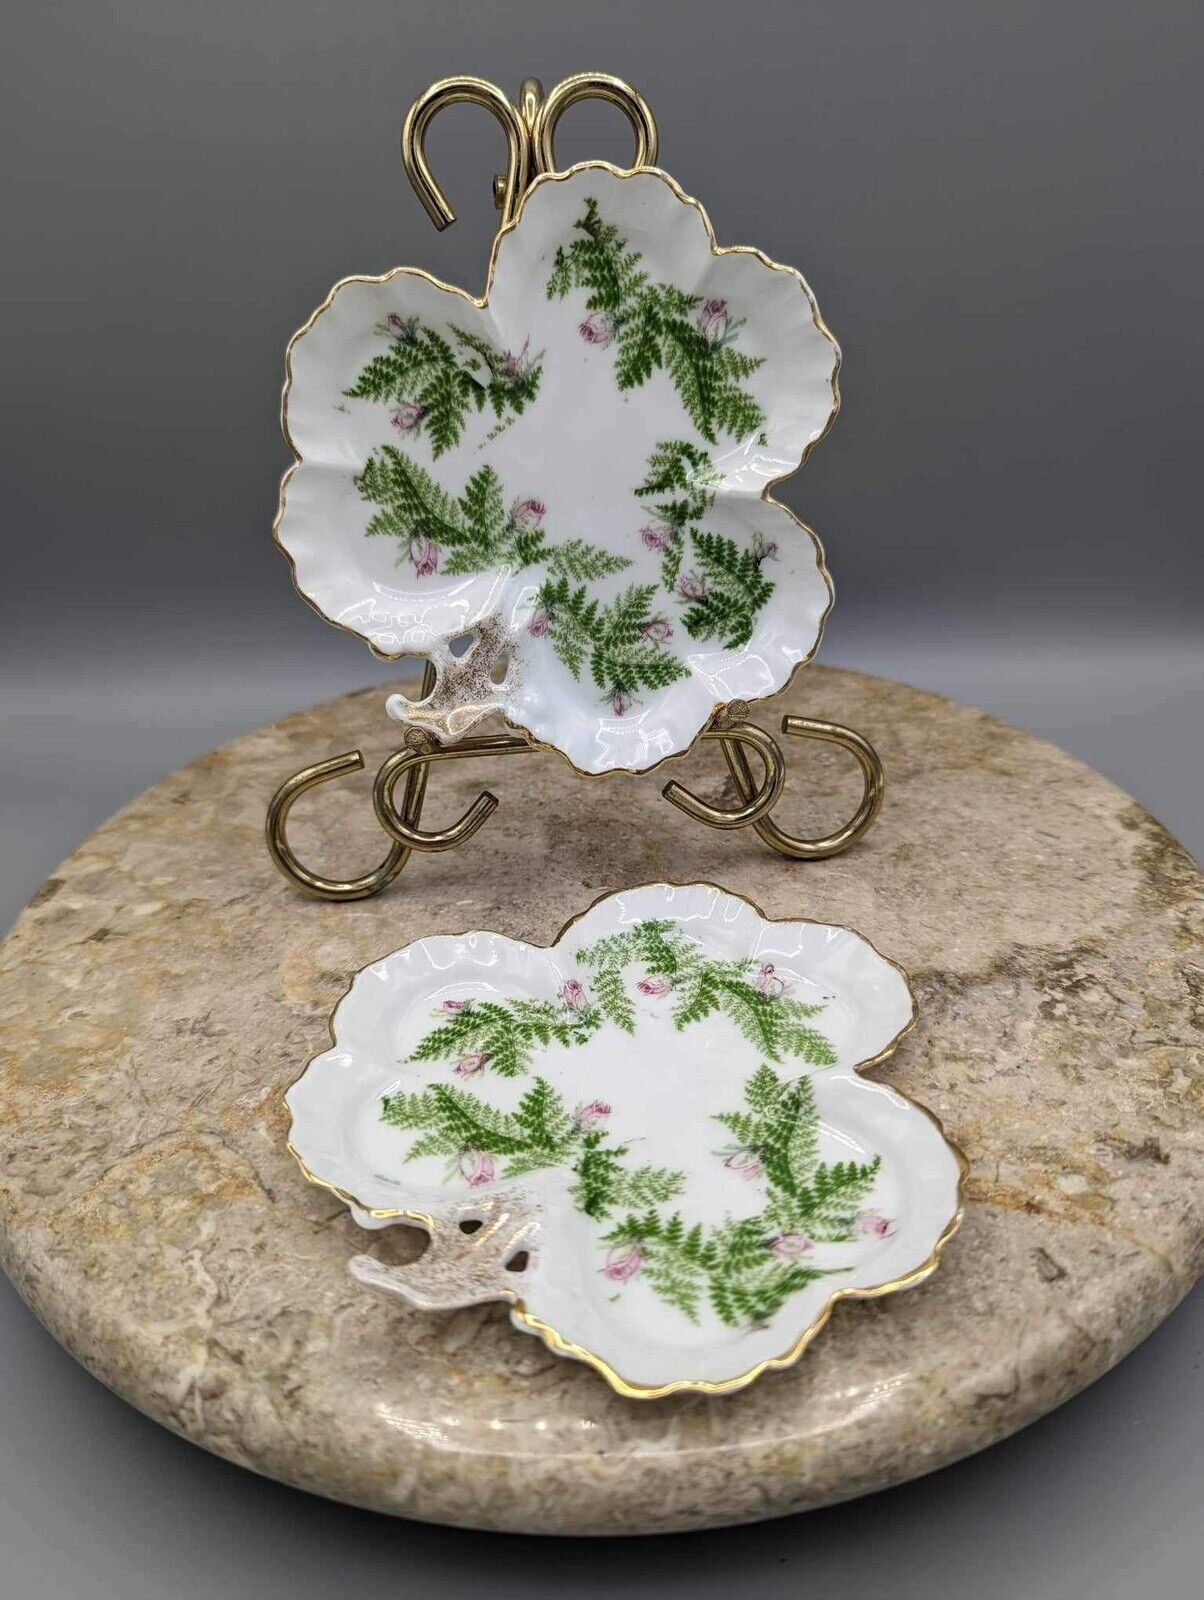 2 German Porcelain Clover Shaped Trinket Dishes w/ Rosebud & Fern Pattern